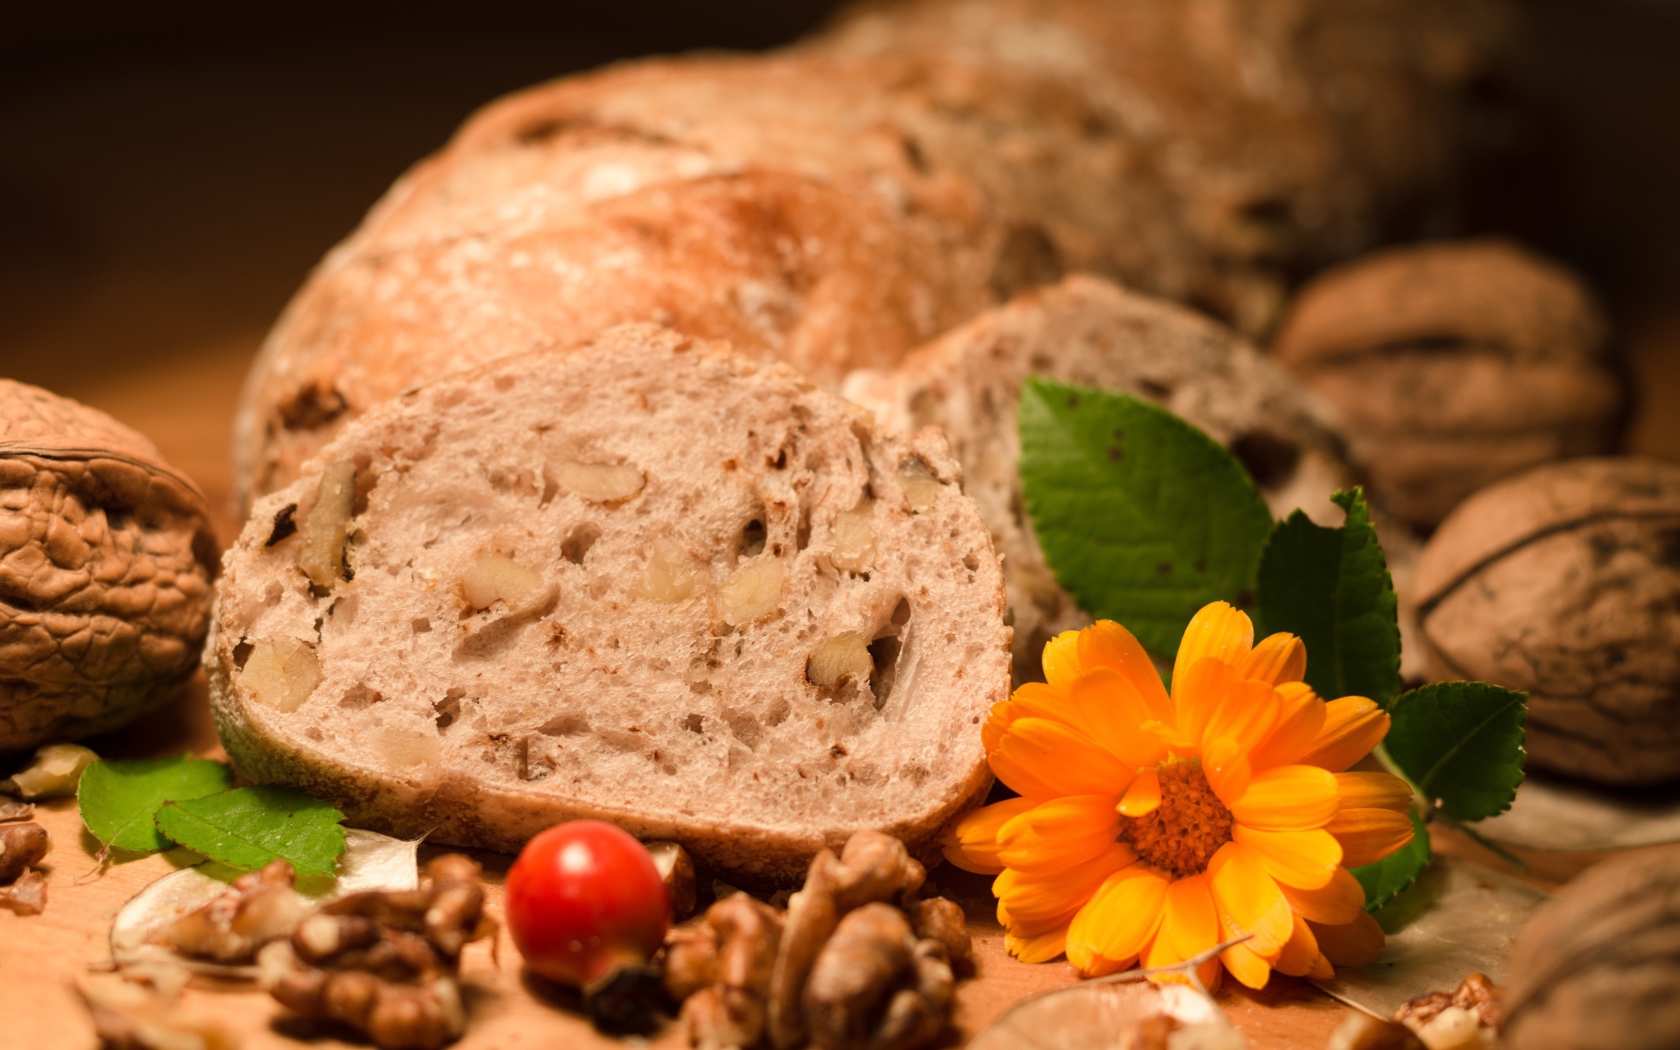 Свежий хлеб с грецкими орехами и цветами календулы на столе